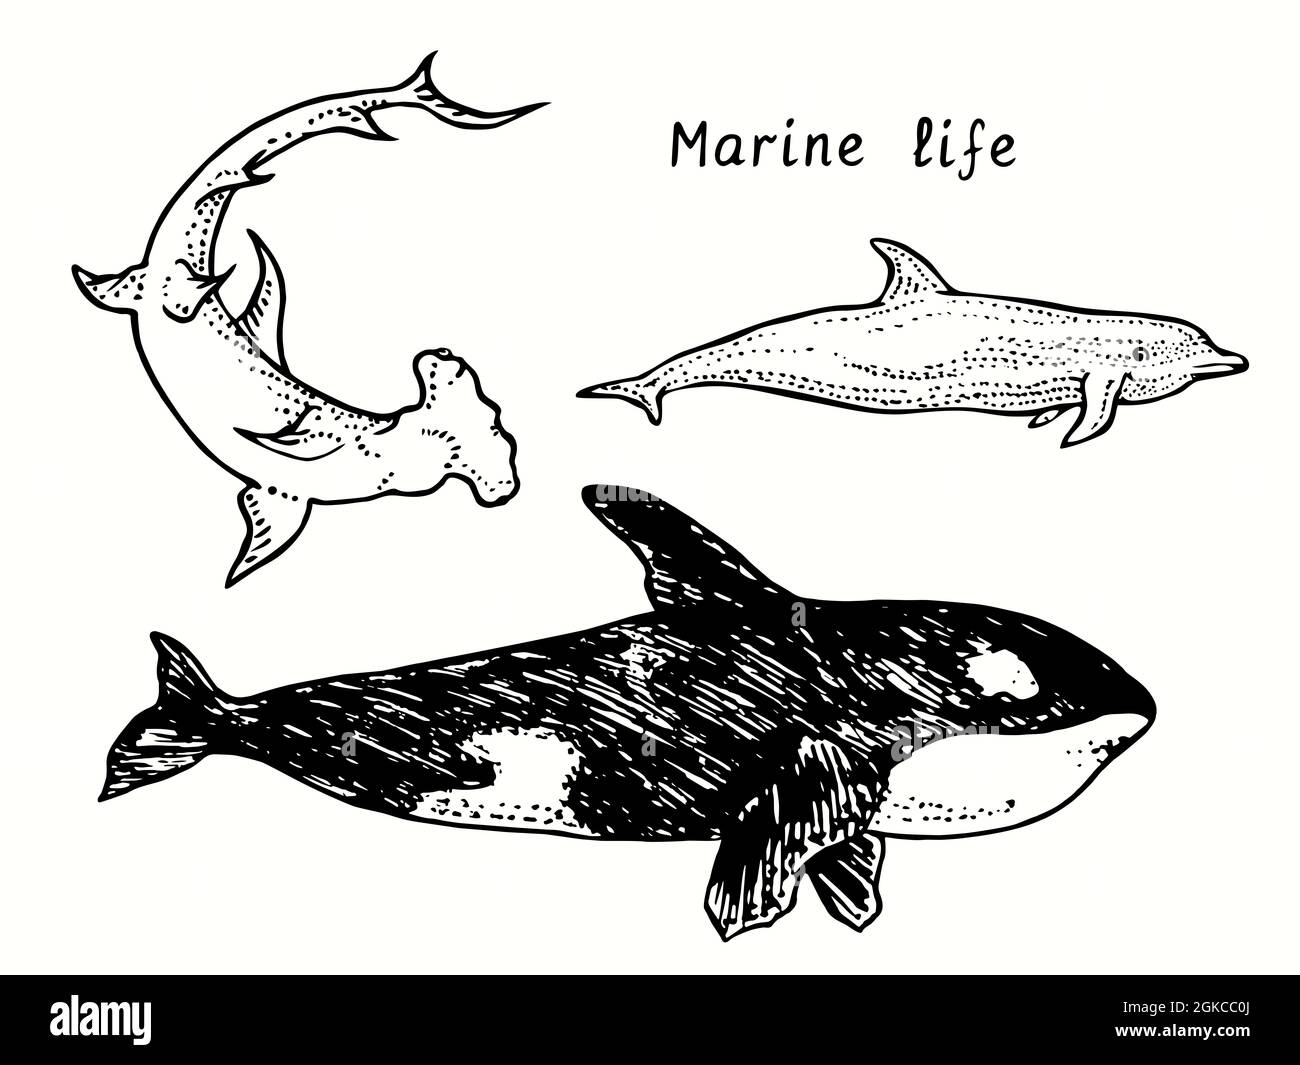 Collection de vie marine.Grand requin Hummerhead, baleine à bec (Orca), vue latérale sur le dauphin à bottlenose.Encre noir et blanc Doodle dessin style de coupe de bois Banque D'Images